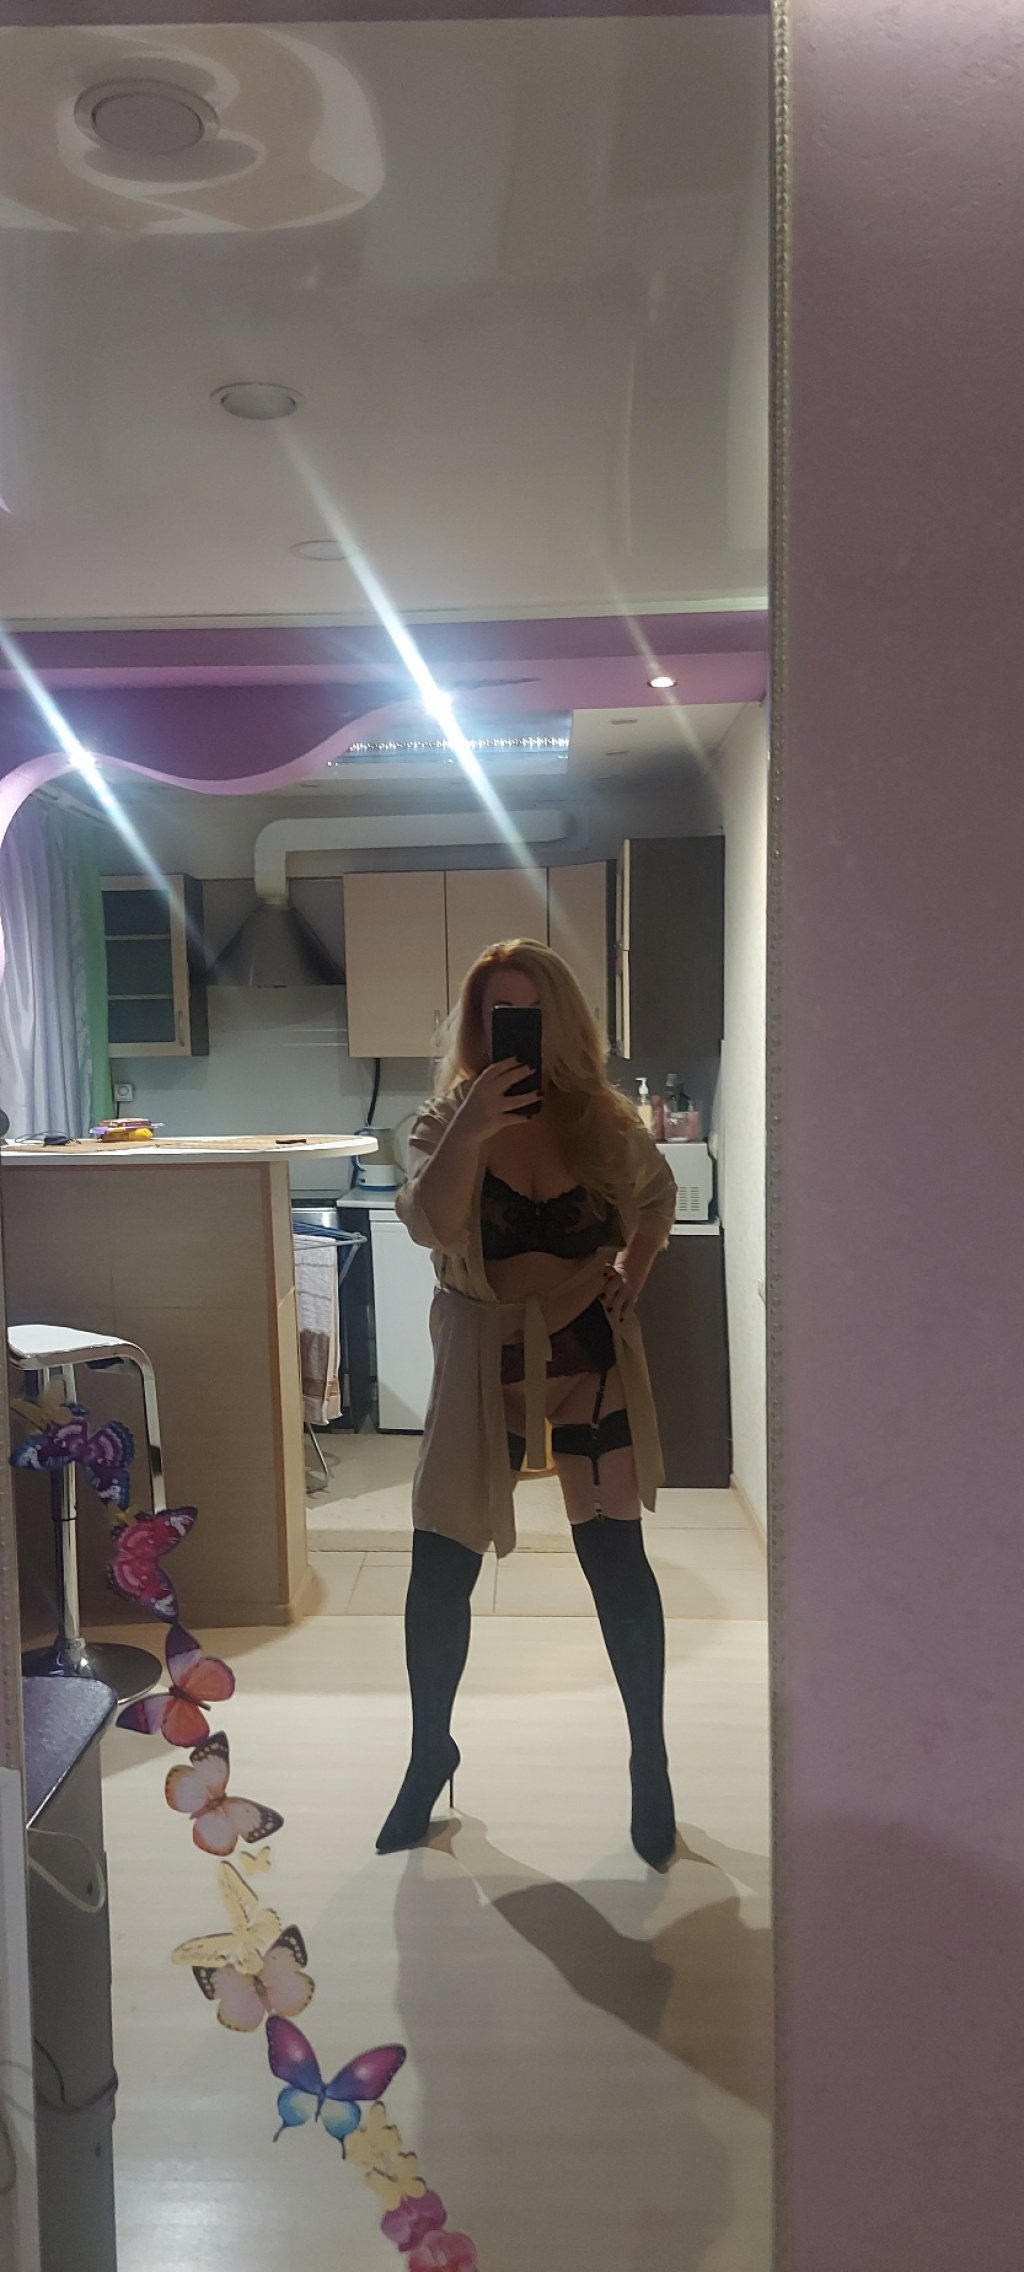 Виктория: проститутки индивидуалки в Челябинске